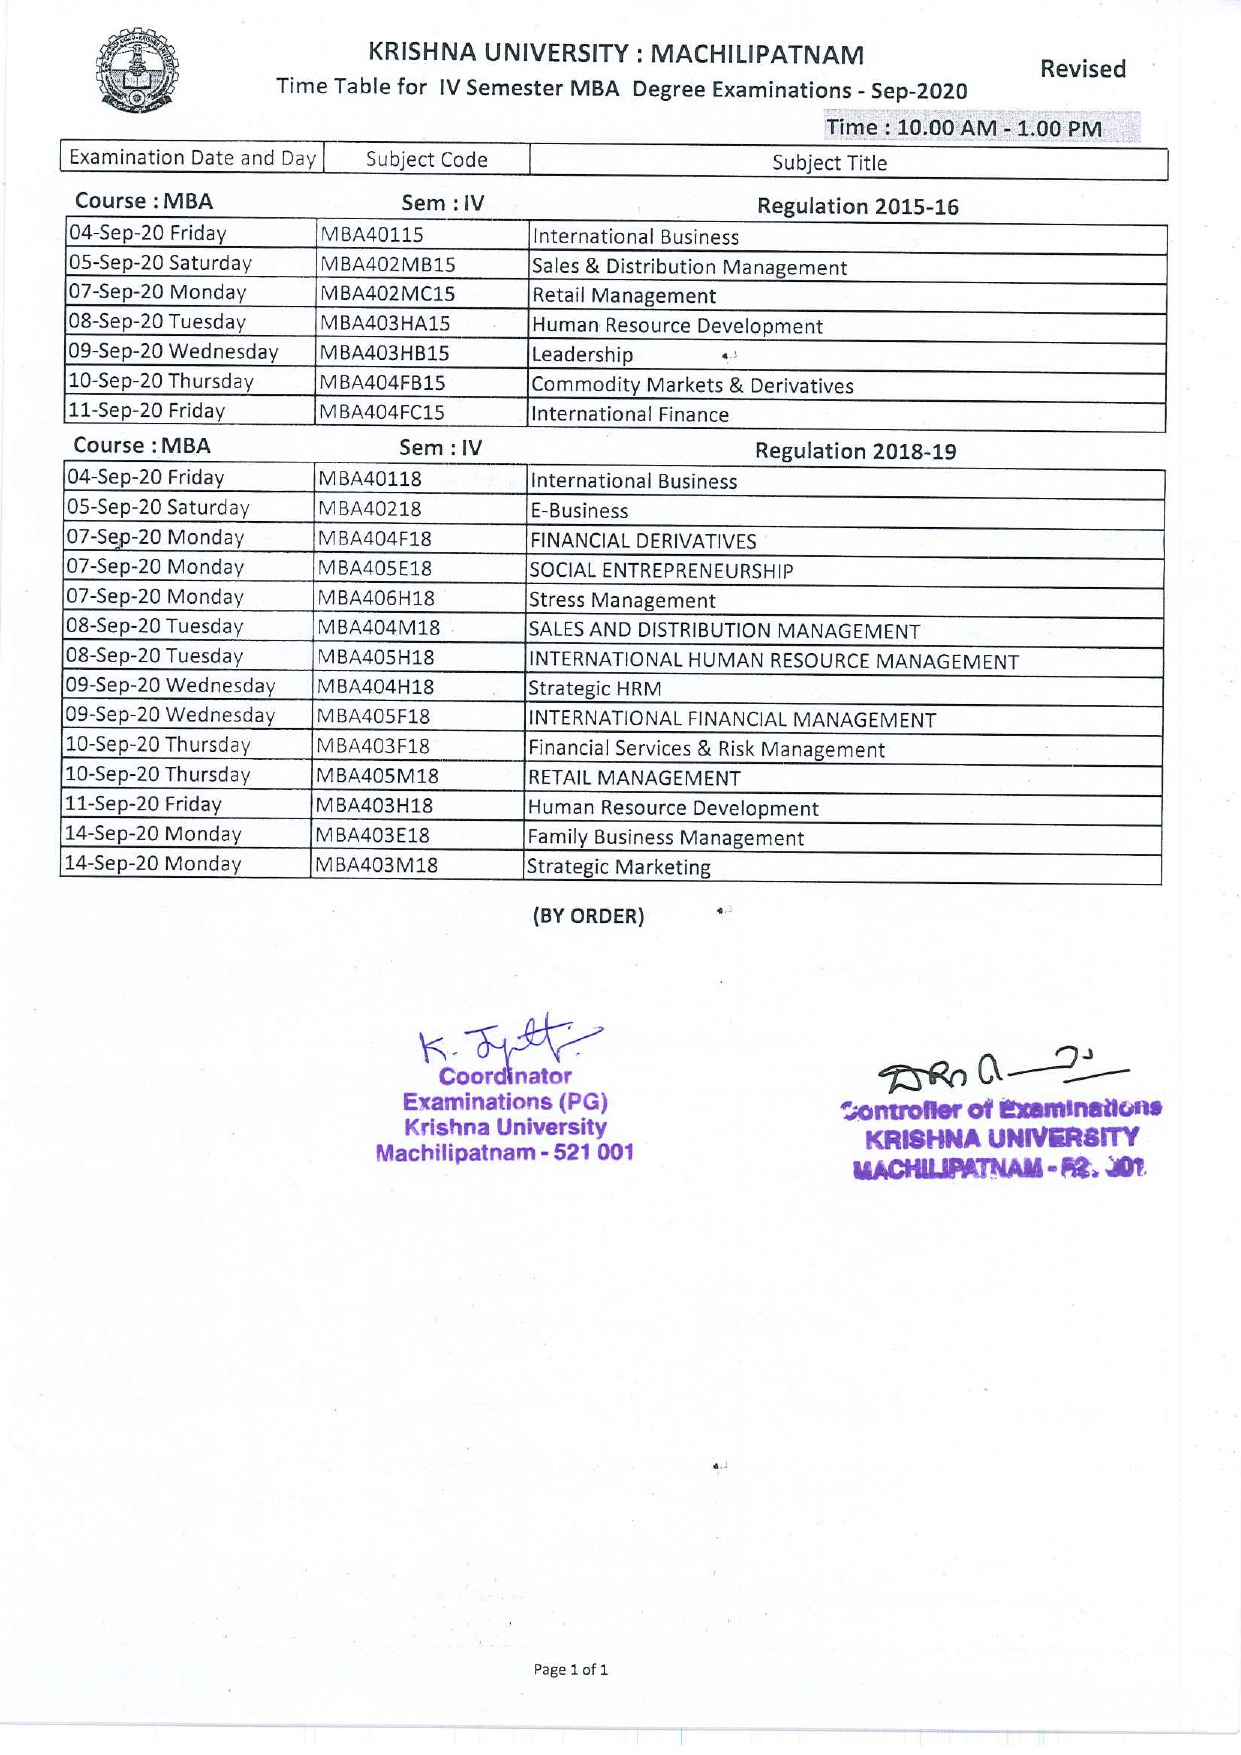 Krishna University MBA 4th Sem Sep 2020 Exam Revised Time Table